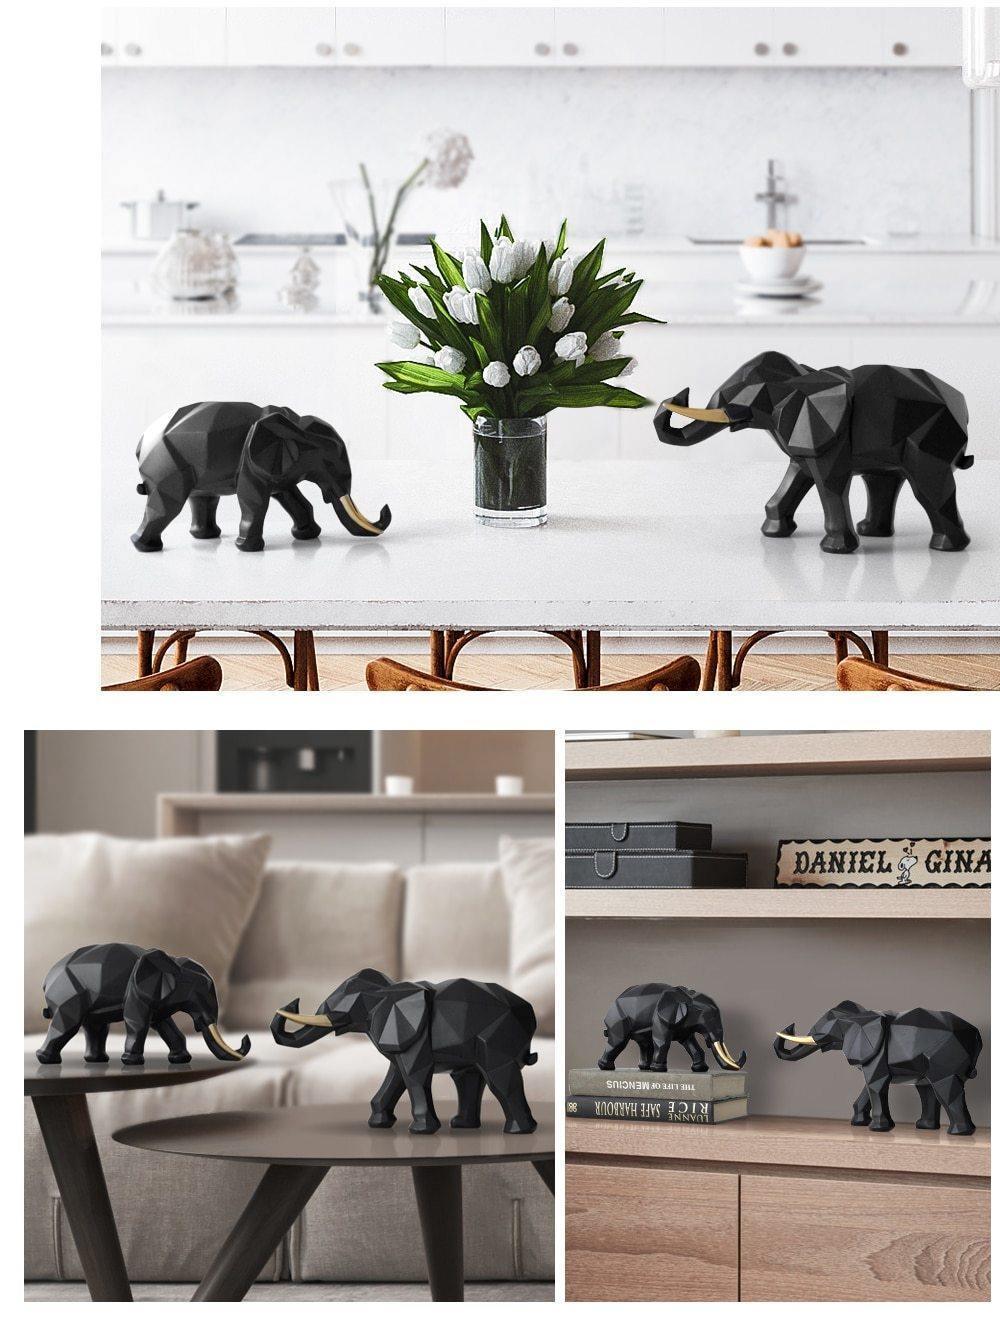 Conjunto de Elefantes Decorativos em Resina ElephArt - Mega Market